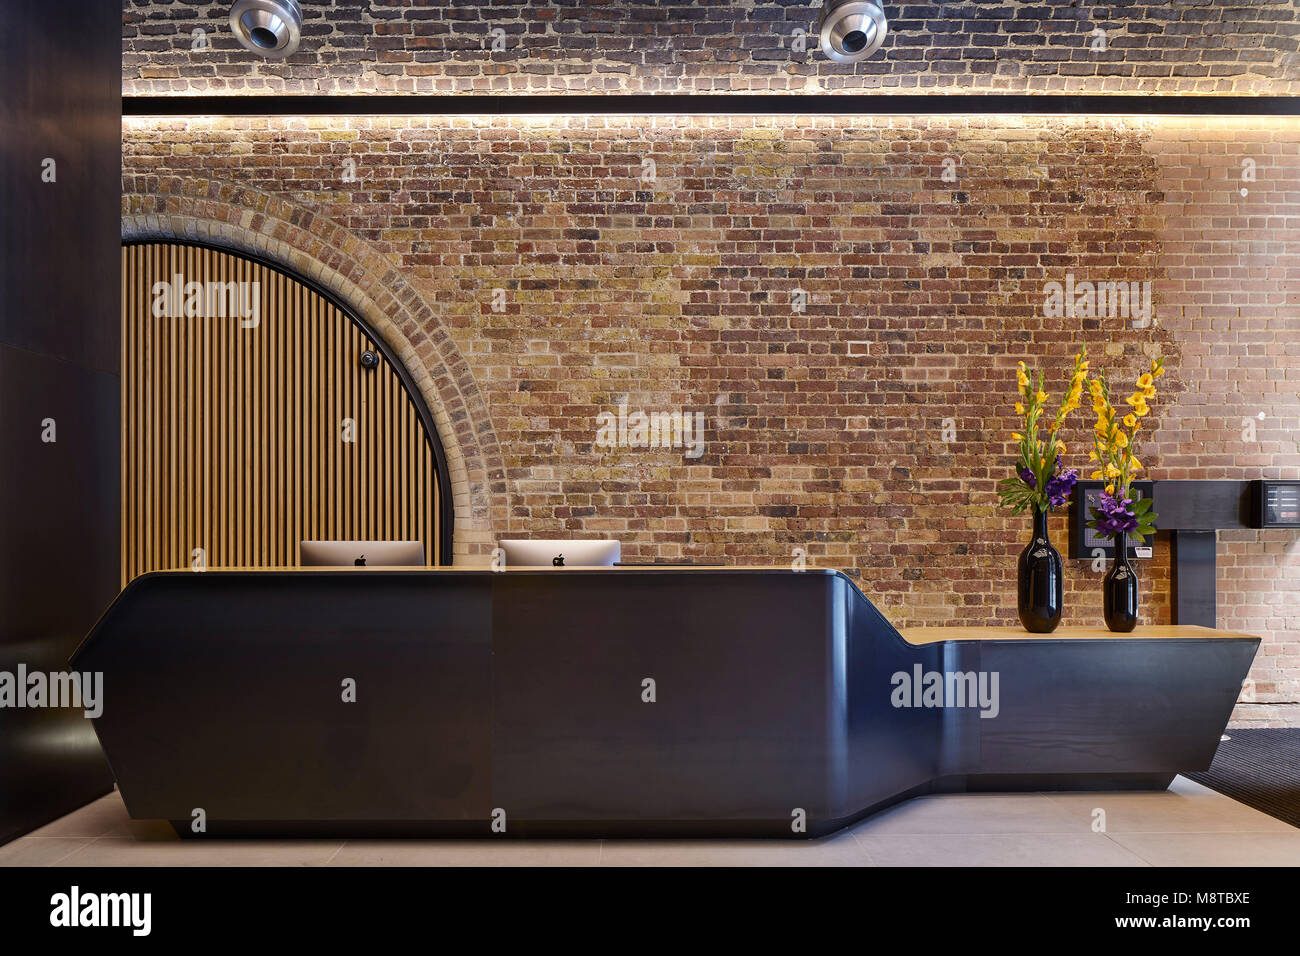 Rezeption. Der Fluss Gebäude, London, Vereinigtes Königreich. Architekt: Steif+Trevillion Architekten, 2017. Stockfoto